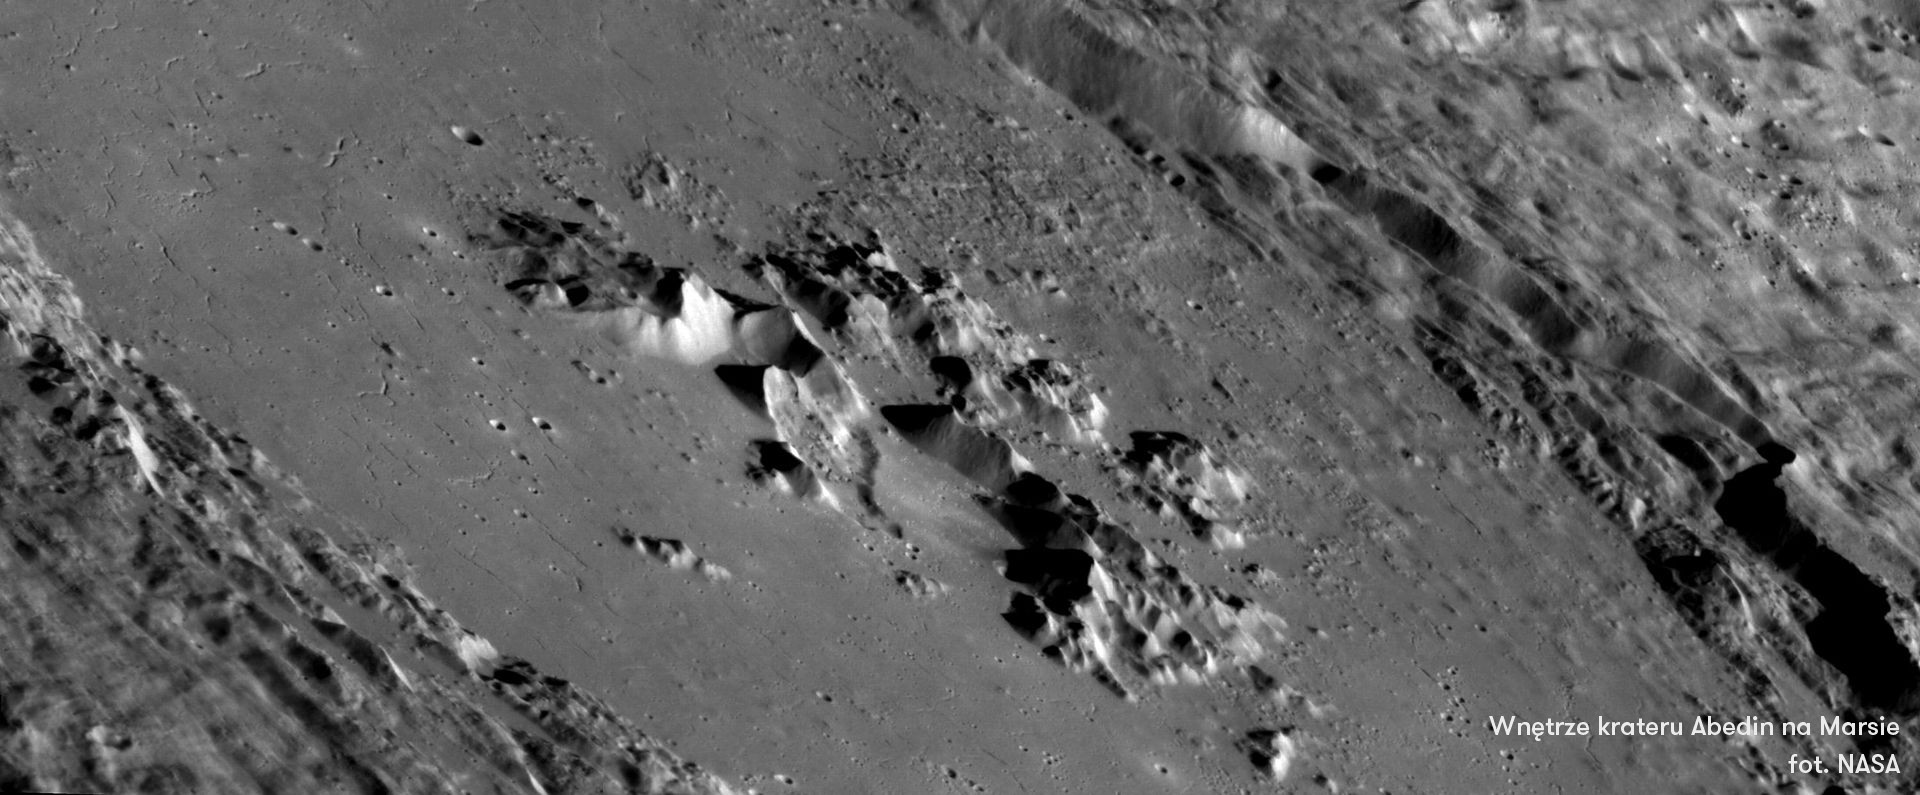 Krater Abedin na Marsie